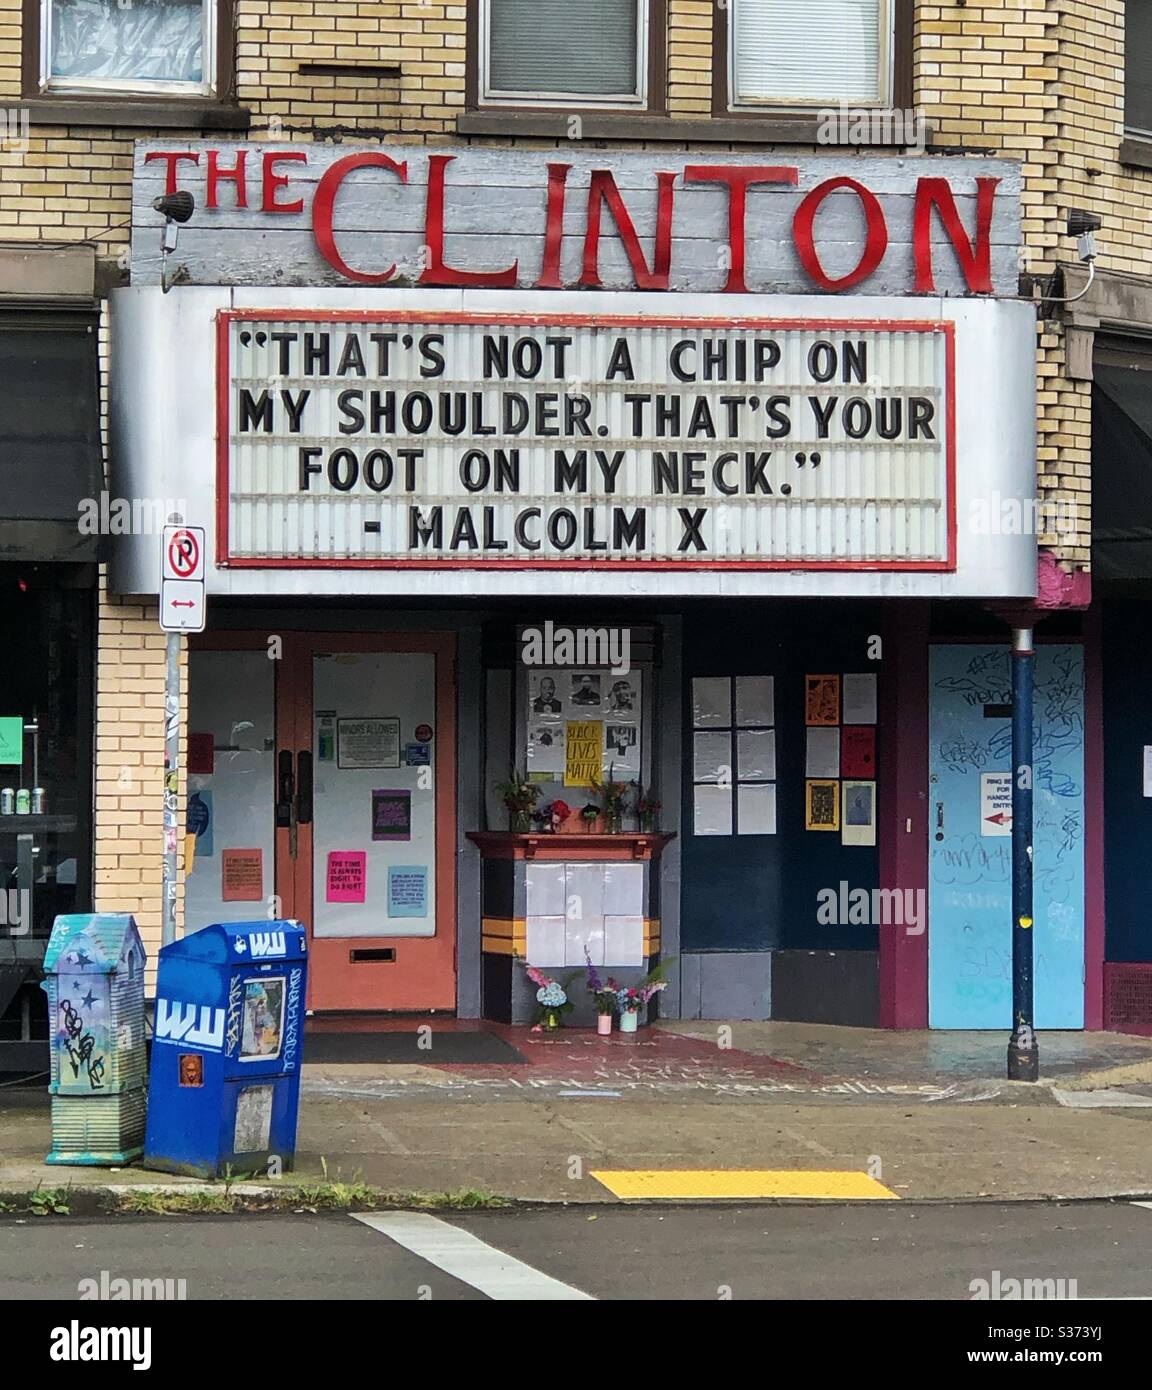 Malcom X cite le chapiteau du Clinton Street Theatre dans le sud-est de Portland, Oregon, lors du confinement de Covid-19 et des manifestations sociales contre la brutalité policière. Banque D'Images